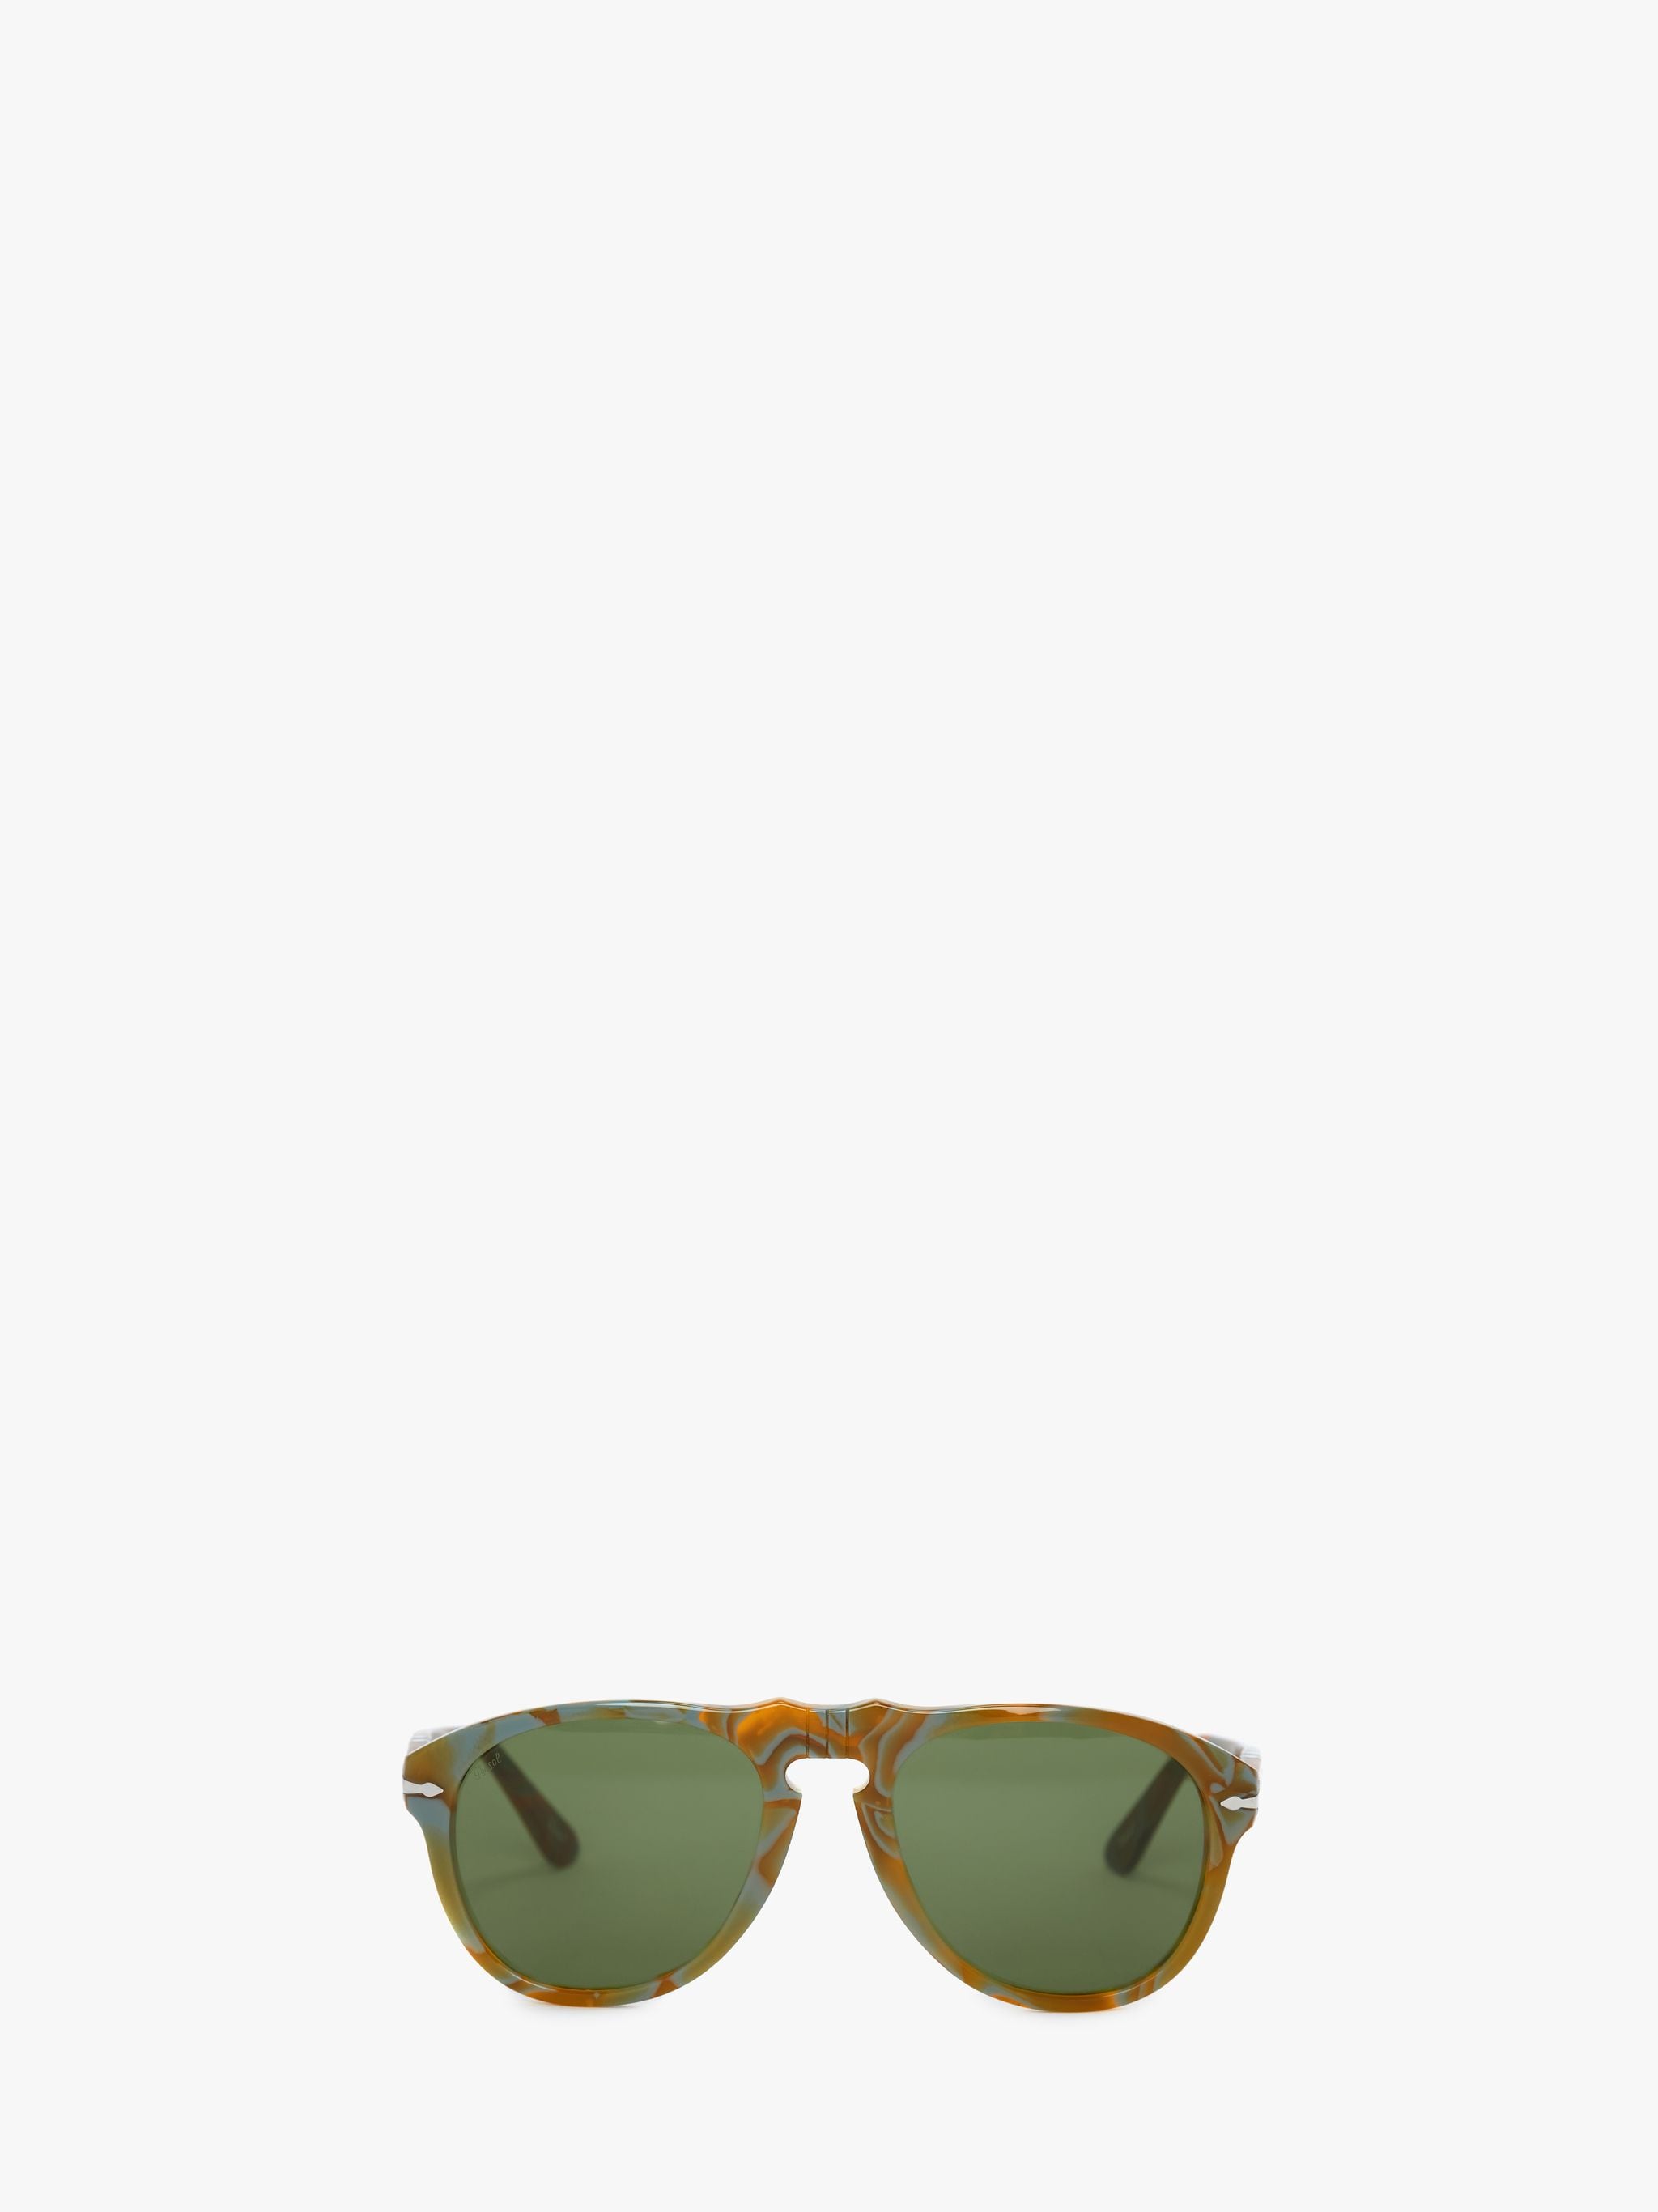 Солнцезащитные очки - авиатор JW Anderson, зеленый солнцезащитные очки carrera авиаторы оправа металл черный